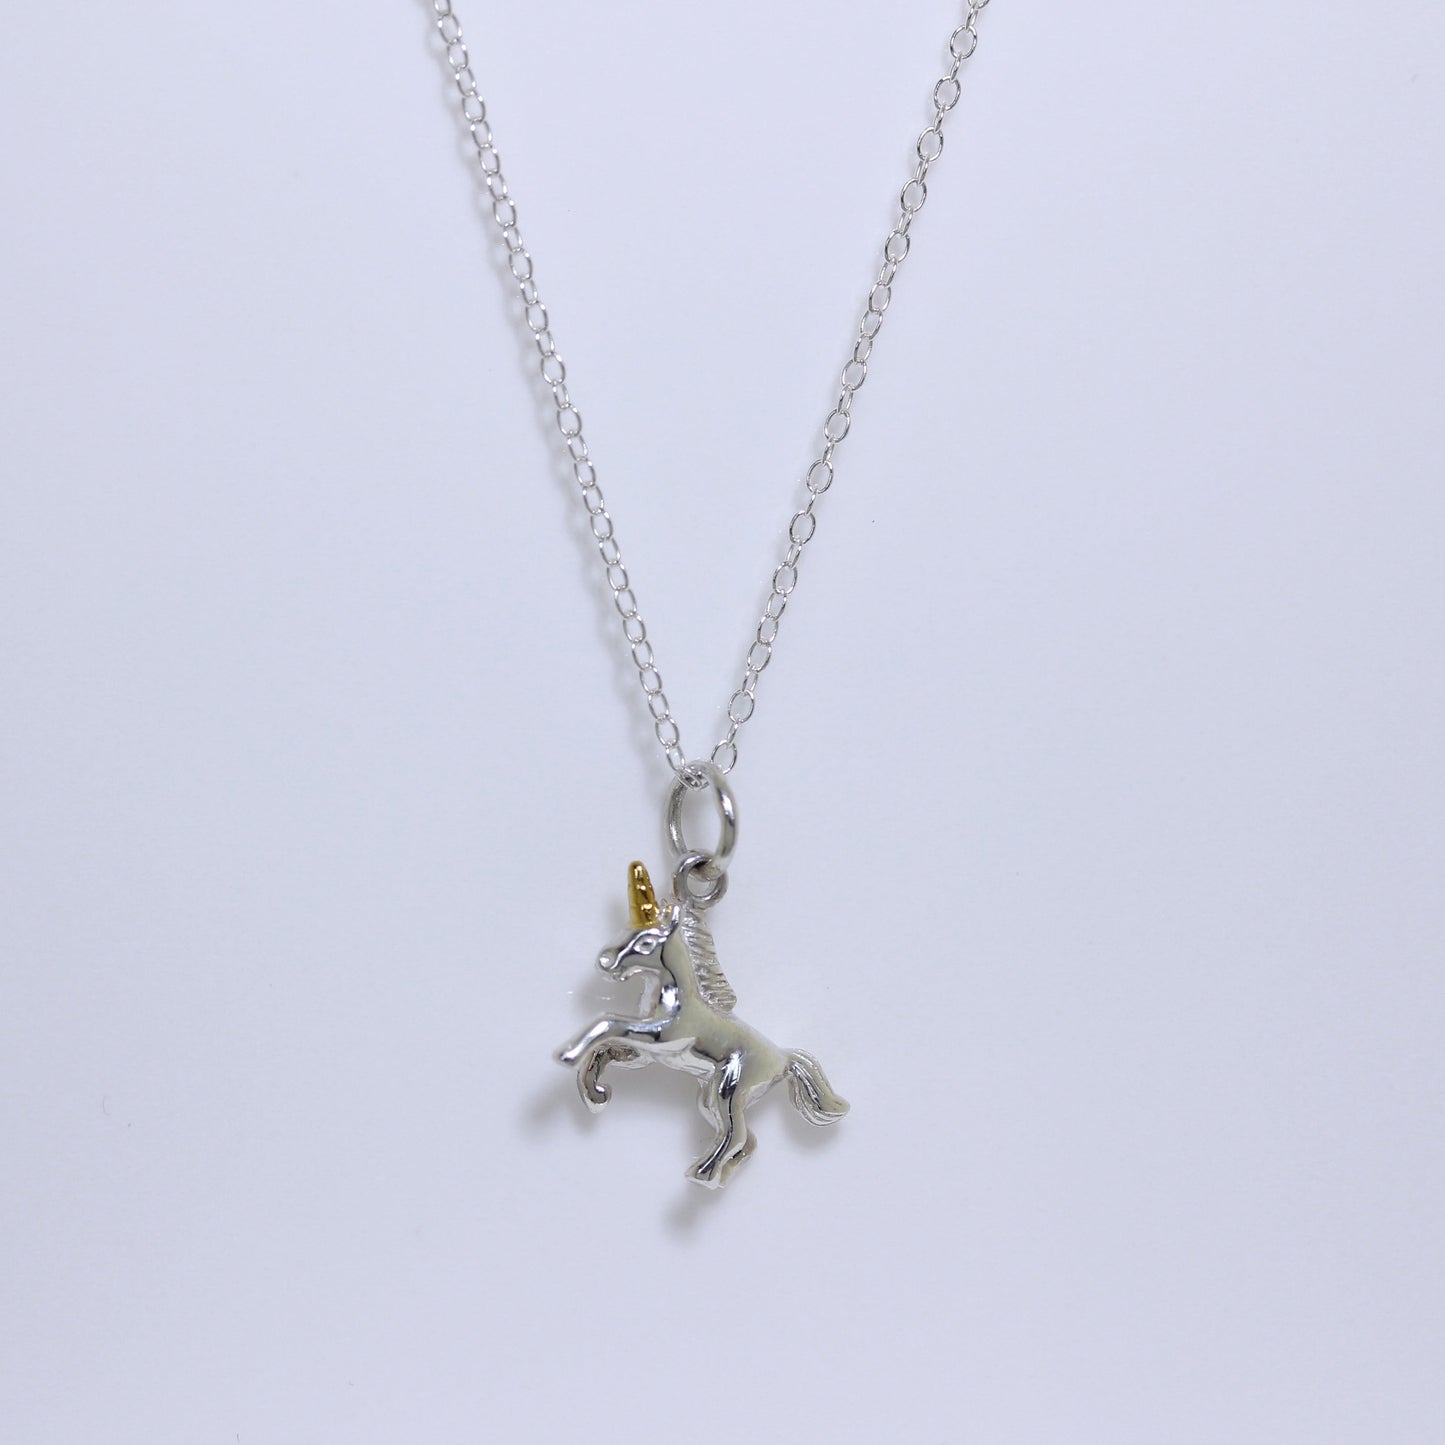 Sterlingsilber Springendes Einhorn Halskette 35,5 - 81cm